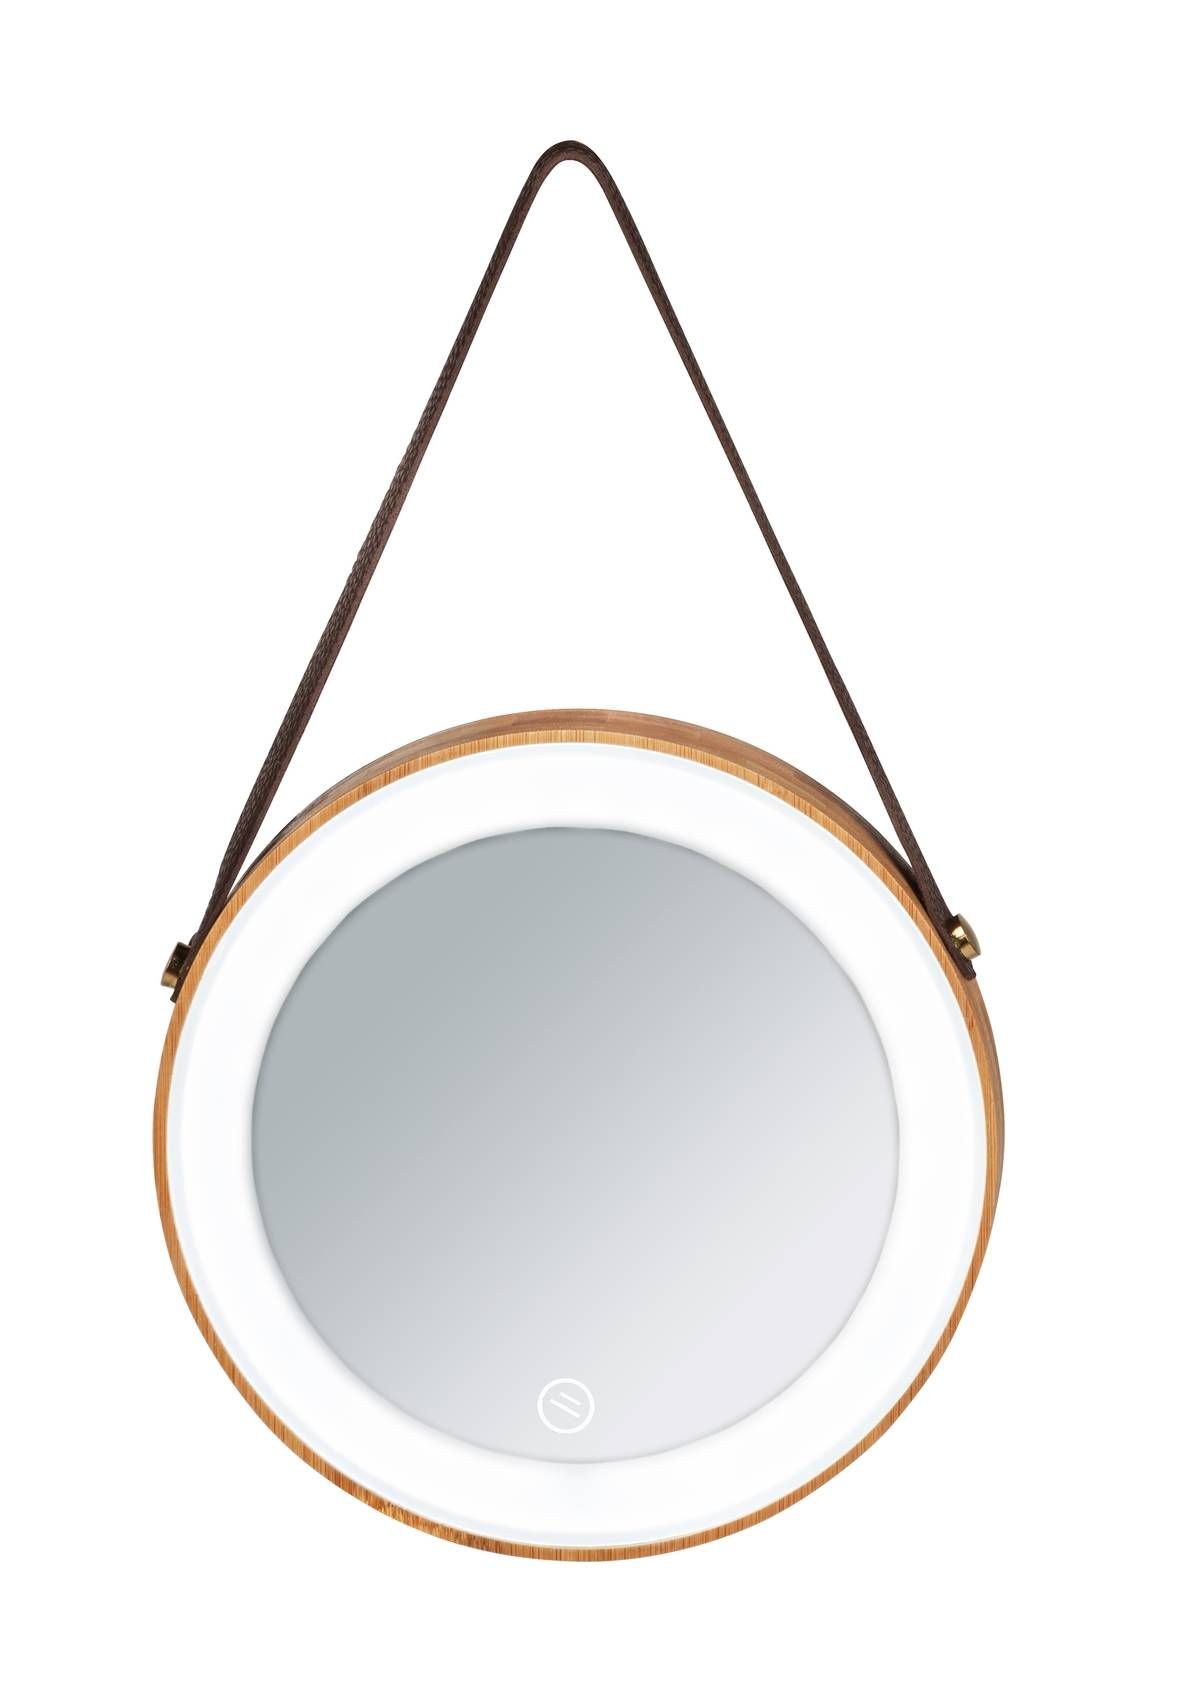 Bambusové závěsné zrcadlo, ? 21 cm, WENKO - EMAKO.CZ s.r.o.